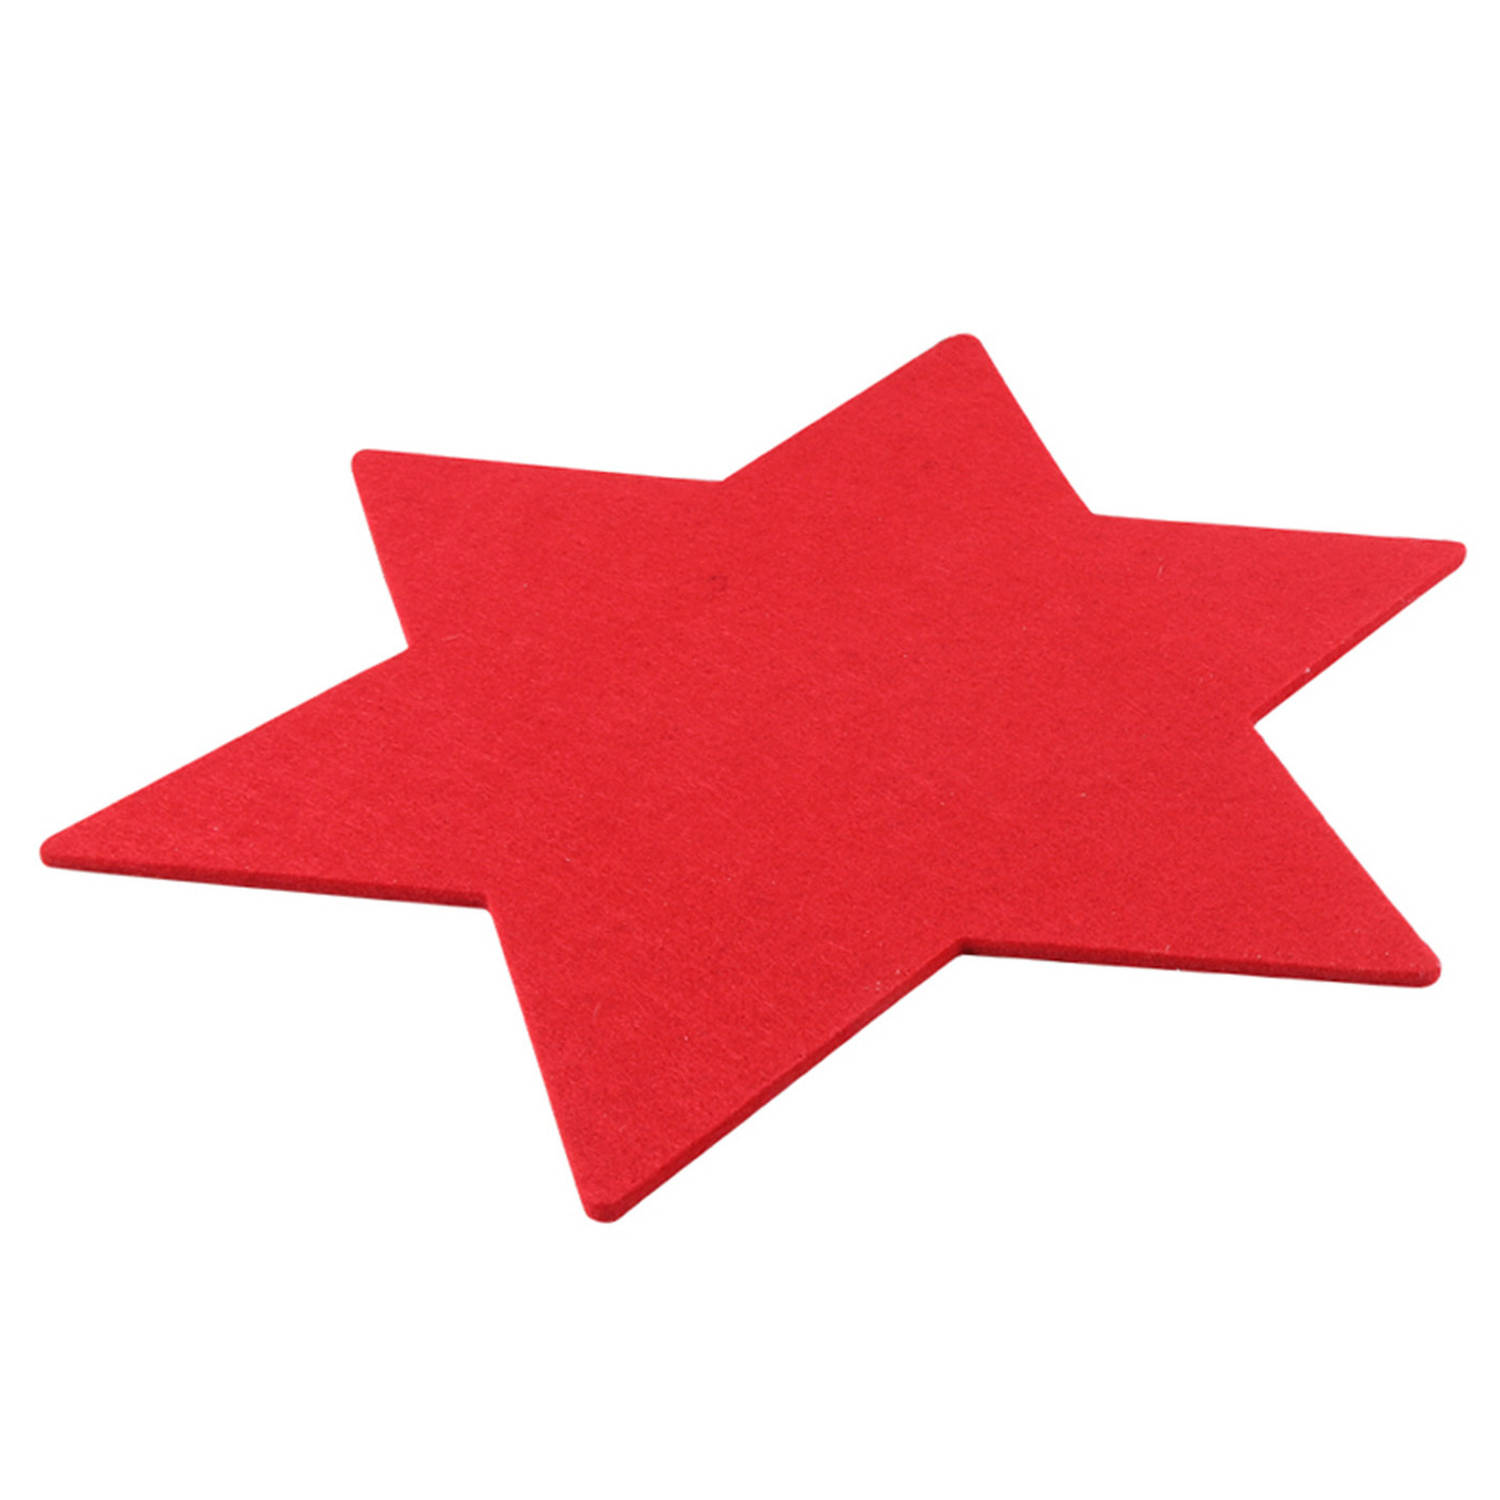 1x stuks ster vormige placemats rood 25 cm van kunststof Placemats